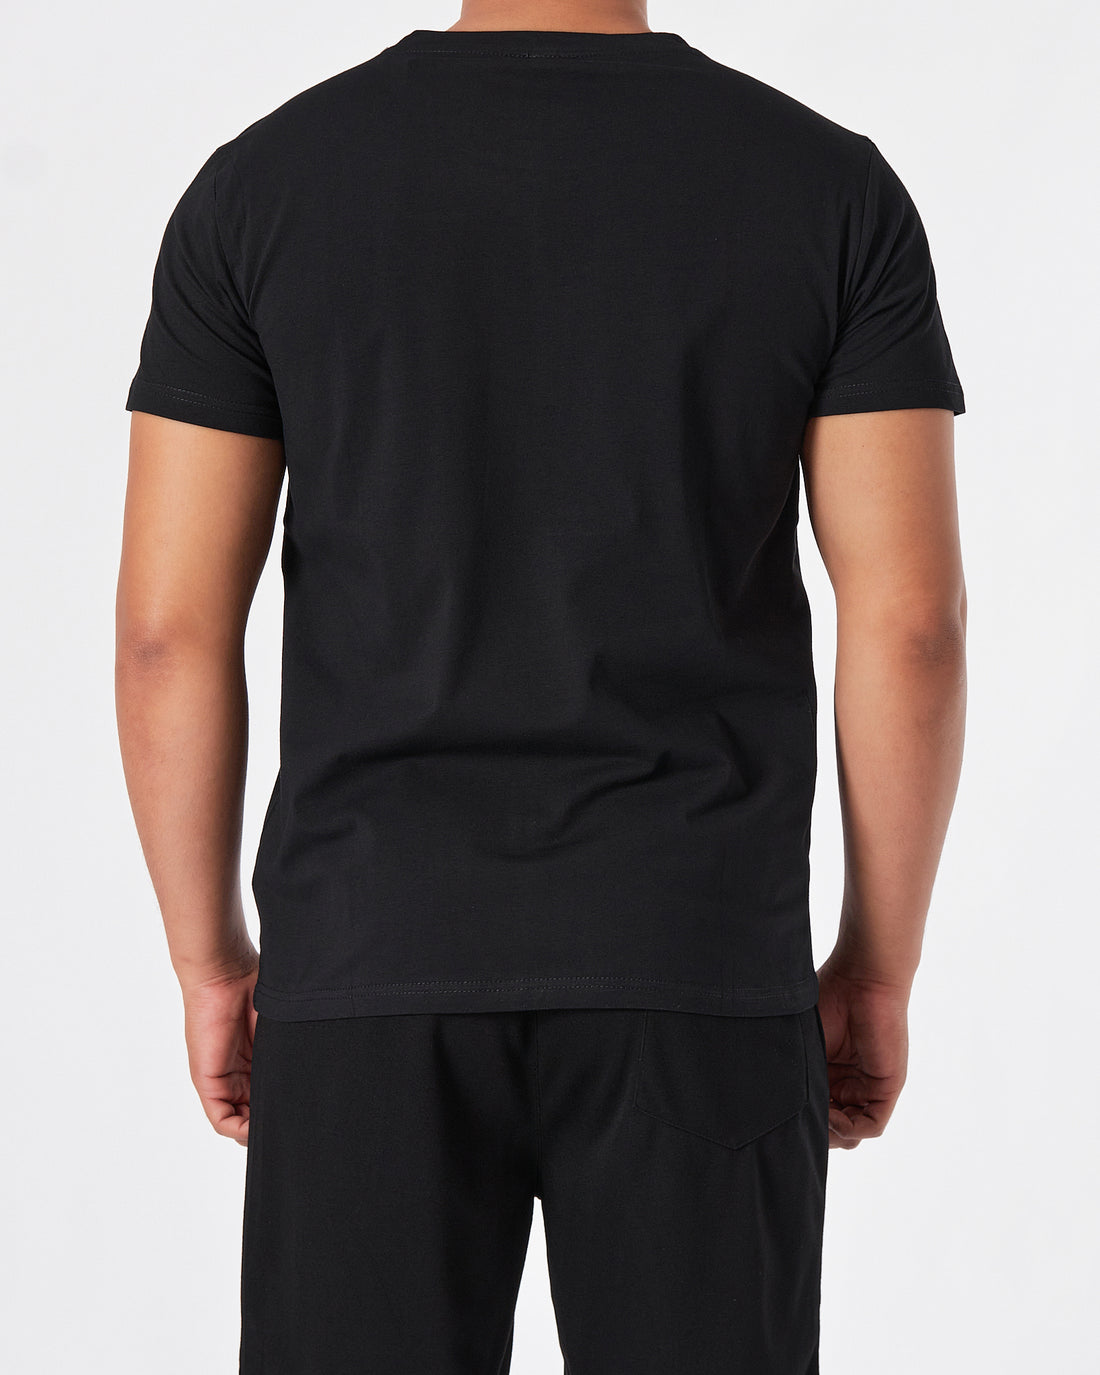 ADI Logo Vertical Printed Men Black T-Shirt 15.50